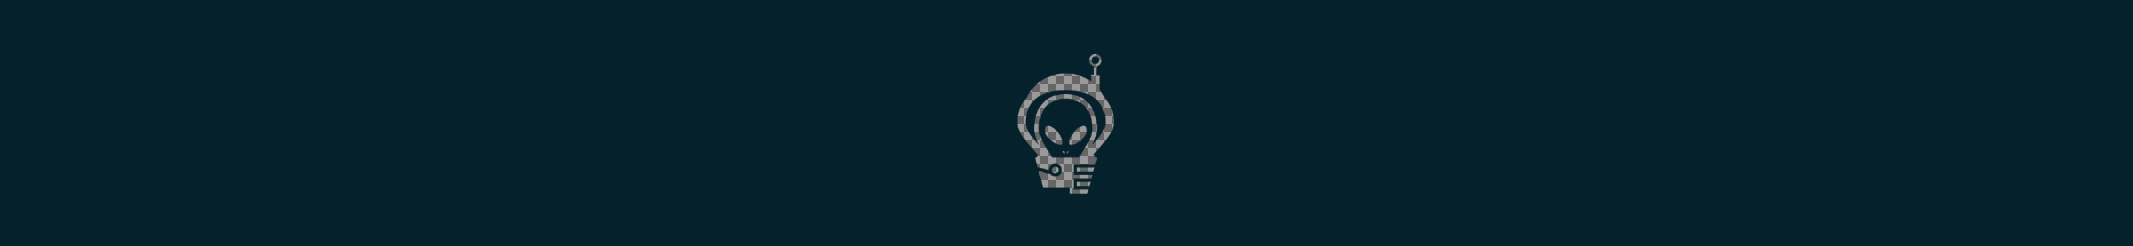 Alien Shirt's profile banner